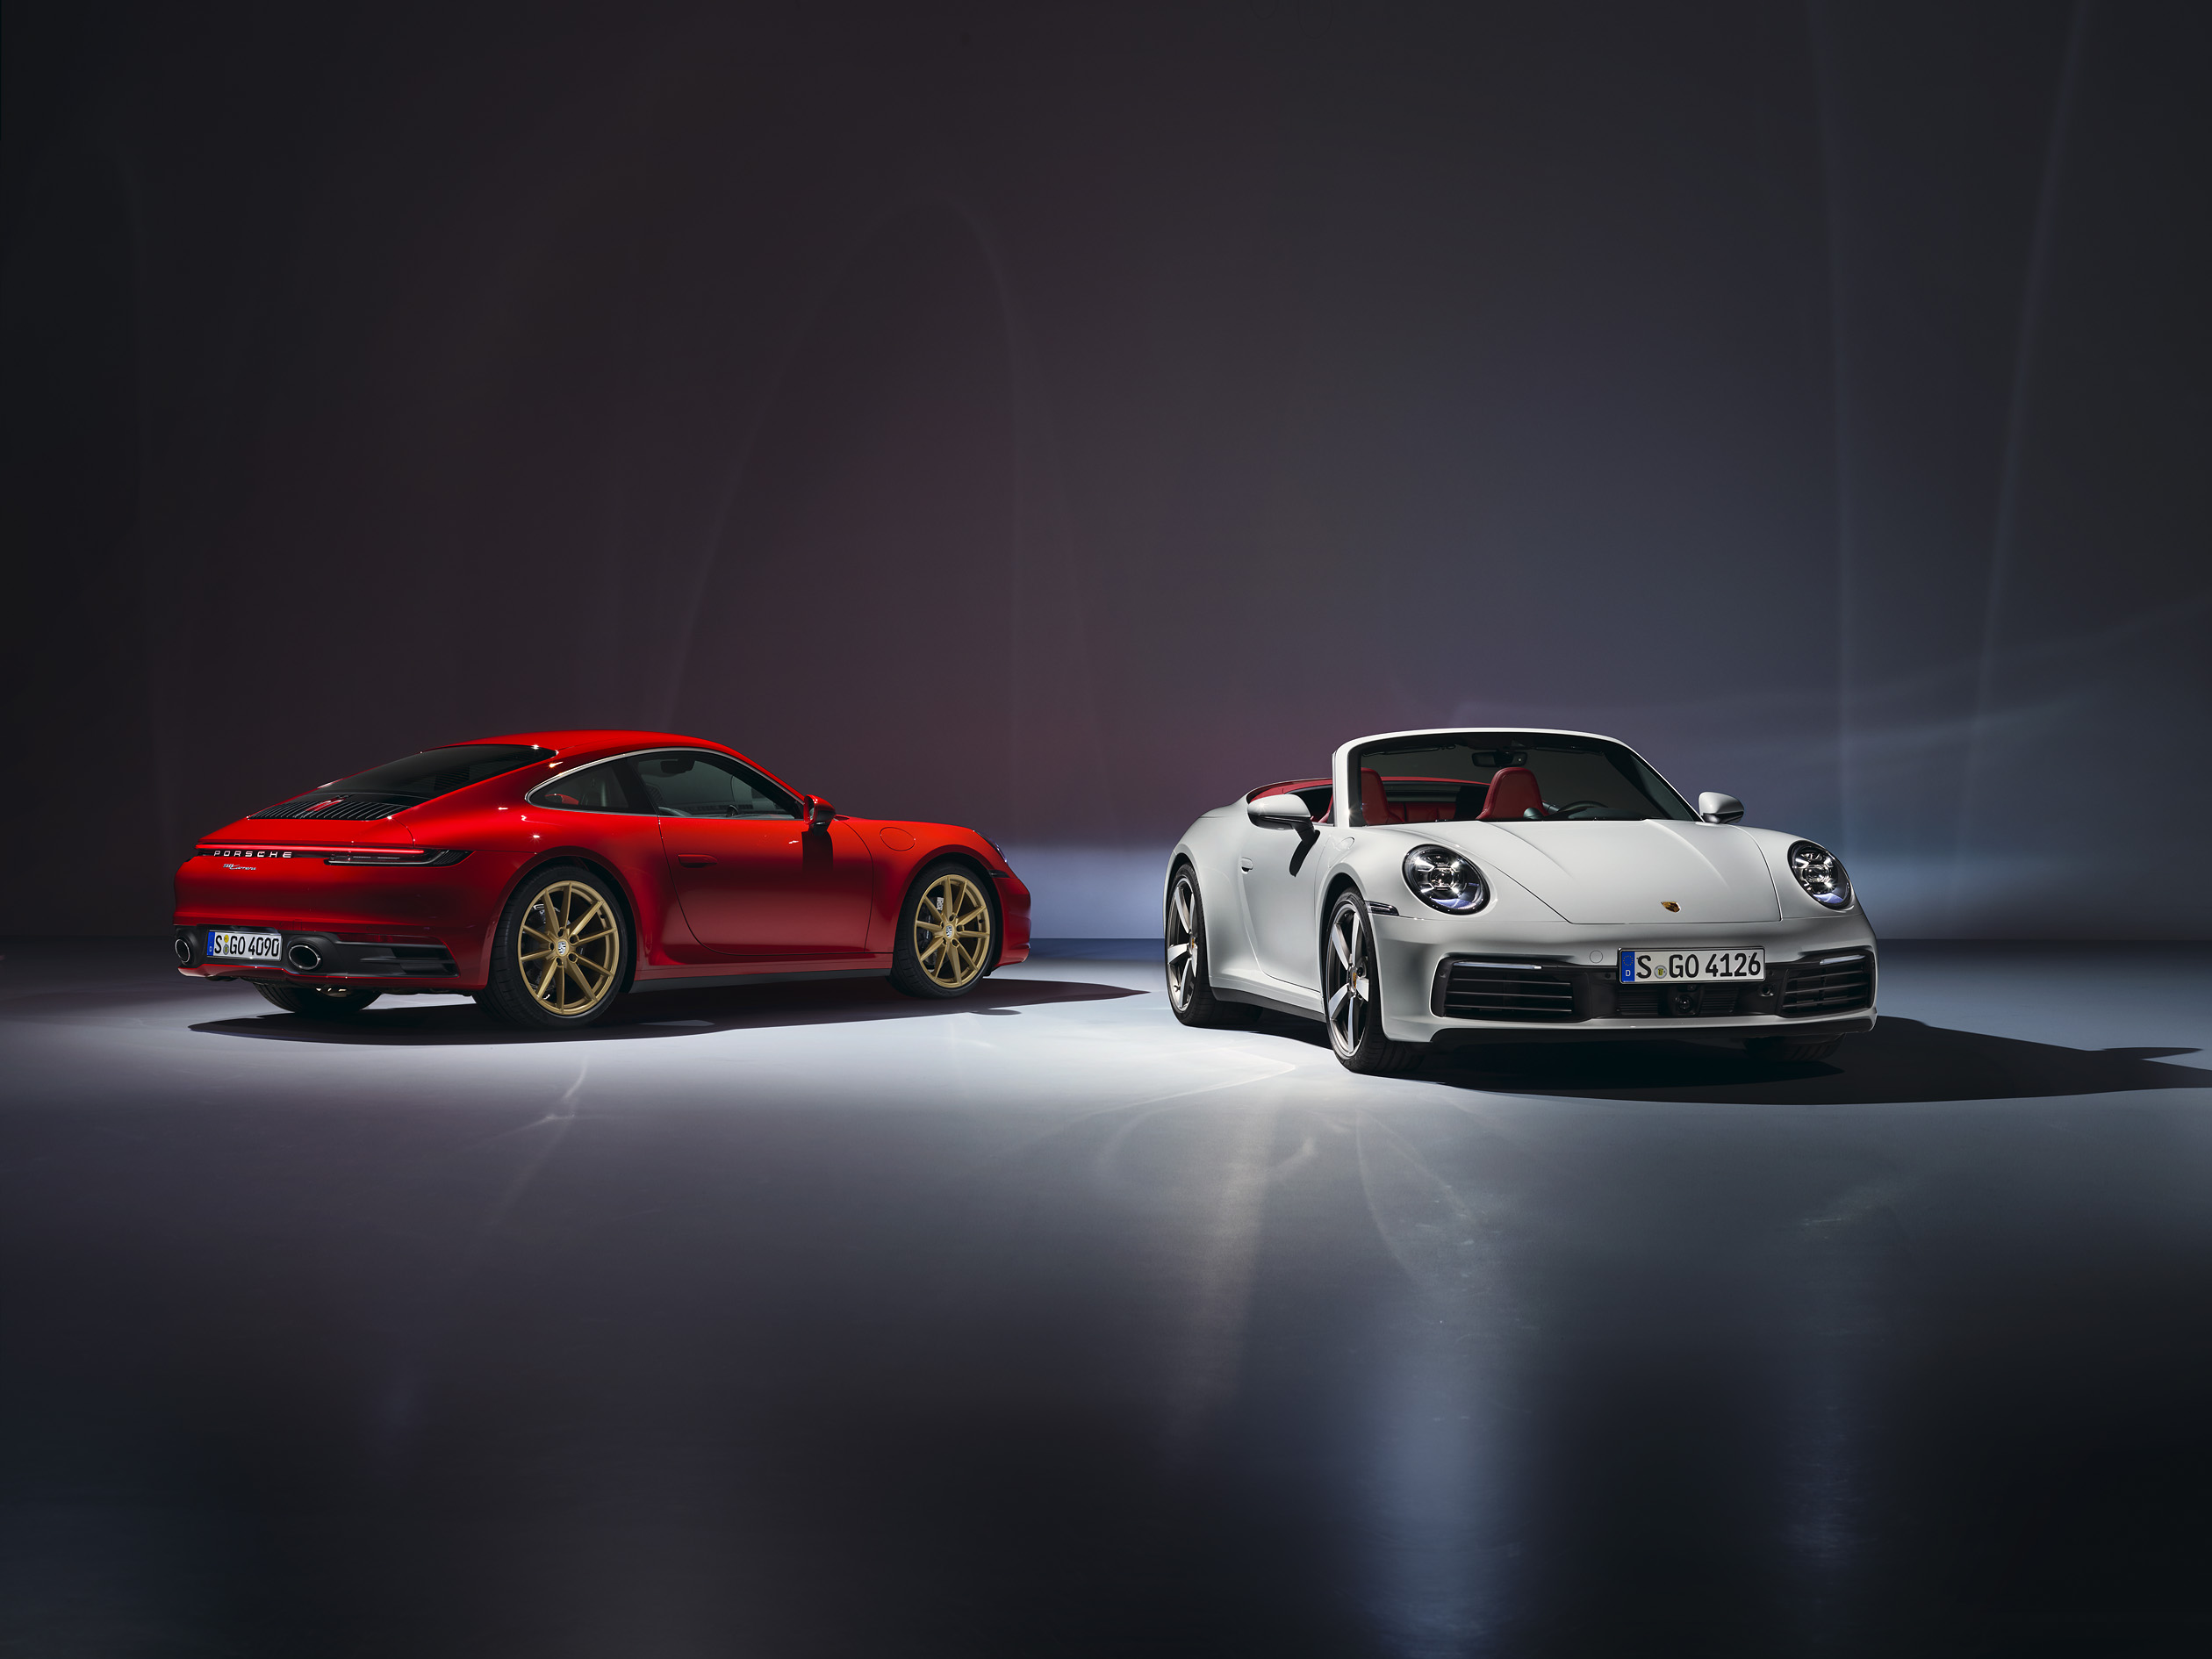  Porsche 911 Carrera Coupé i 911 Carrera Cabriolet